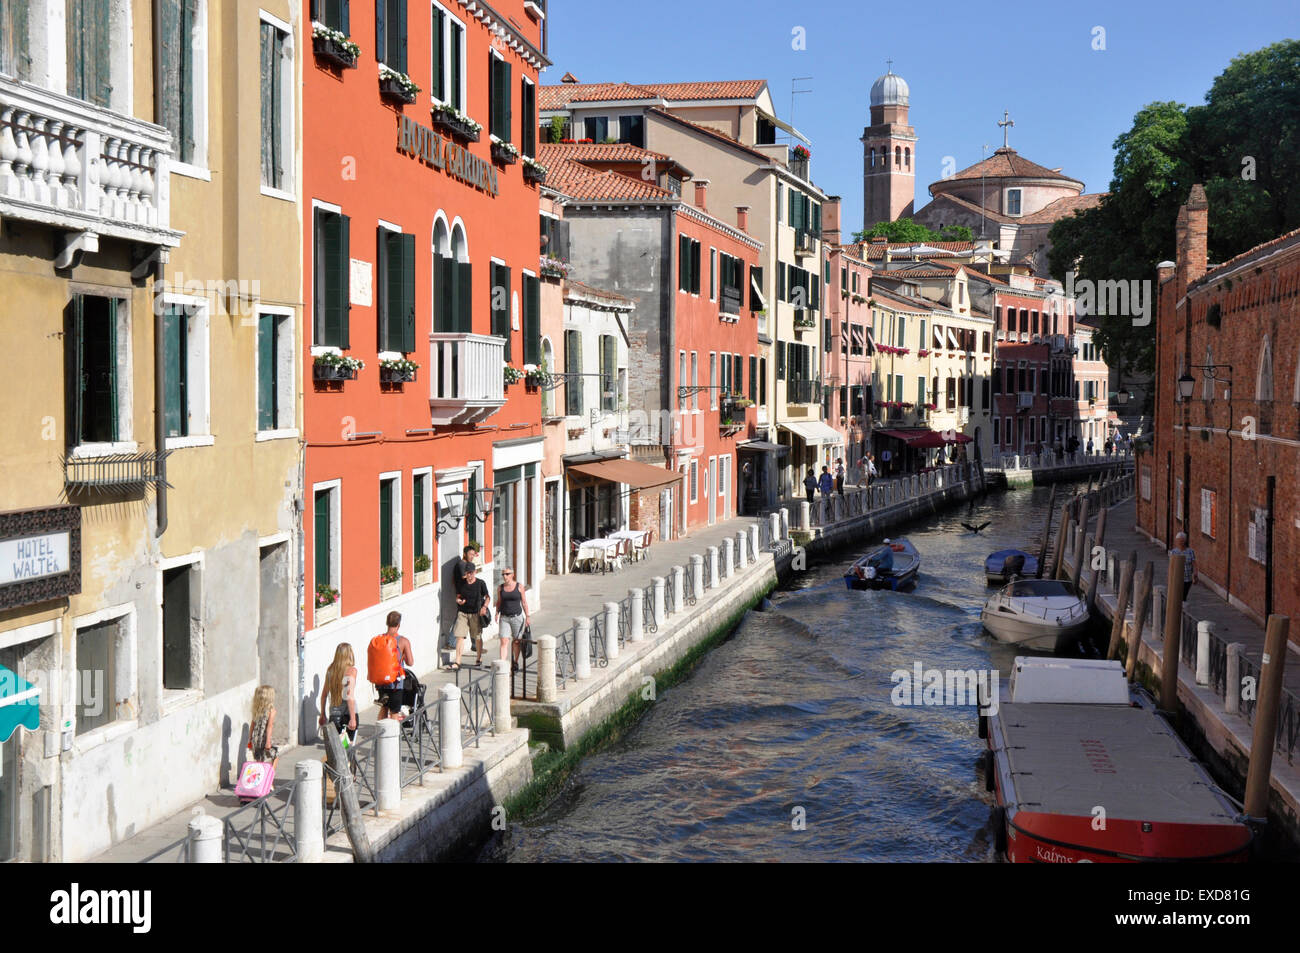 Italie - Venise - Cannaregio région - animation - canal de remous promenade au bord de l'eau - Hôtels - sunlight - blue sky Banque D'Images